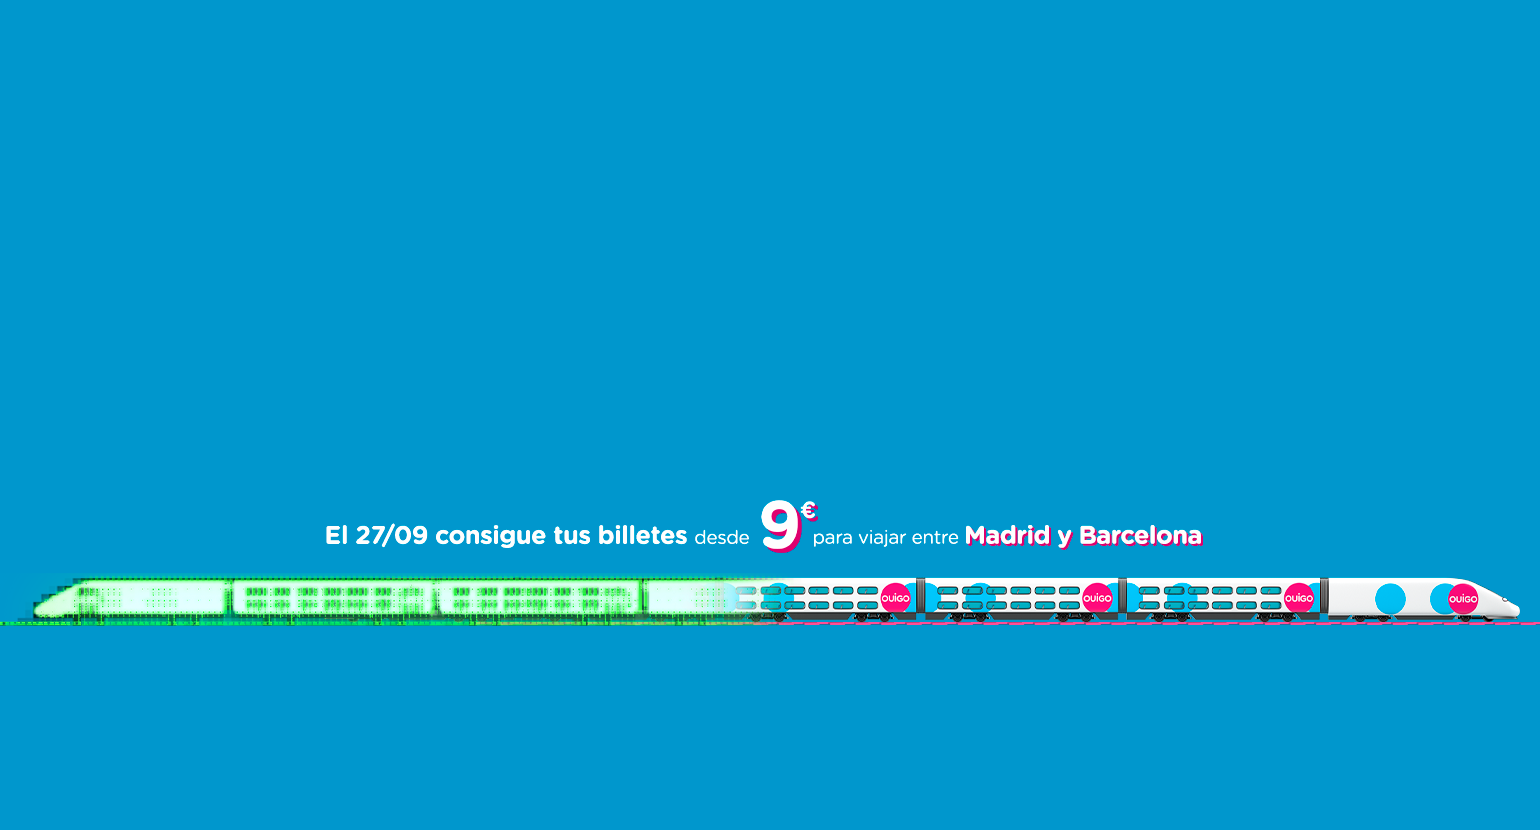 El 27/09 consigue tus billetes desde 9 euros para viajar entre Madrid y Barcelona